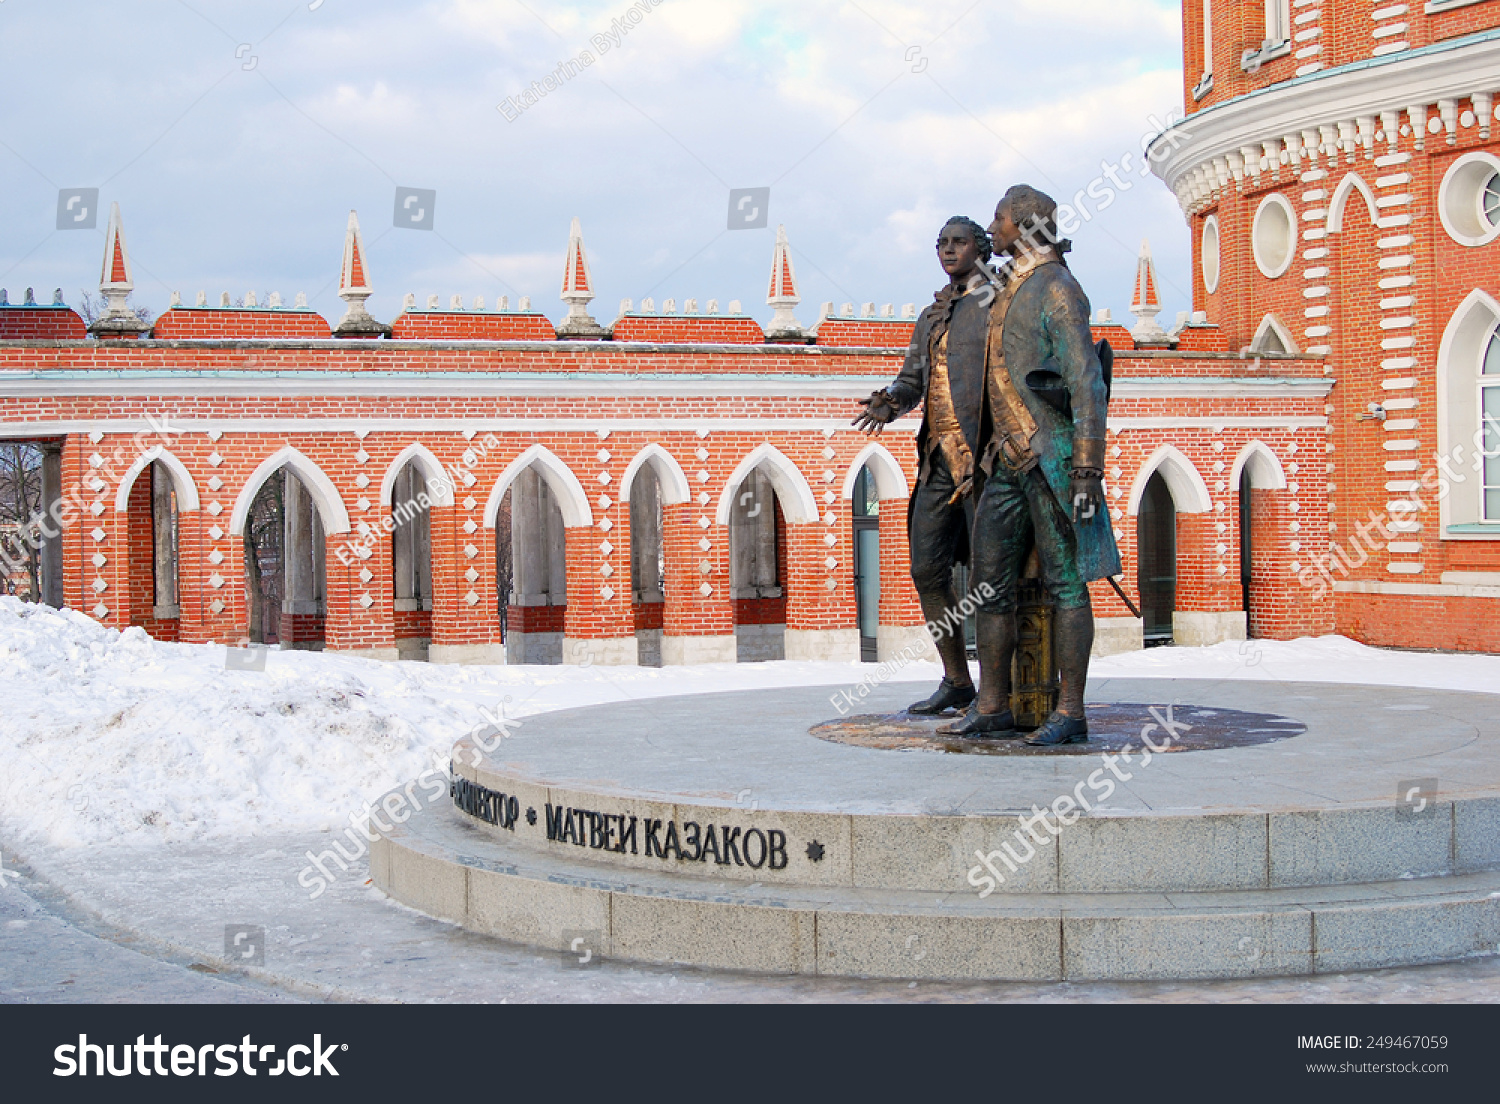 莫斯科,2015年2月1日:纪念碑玛Kazakov瓦西里